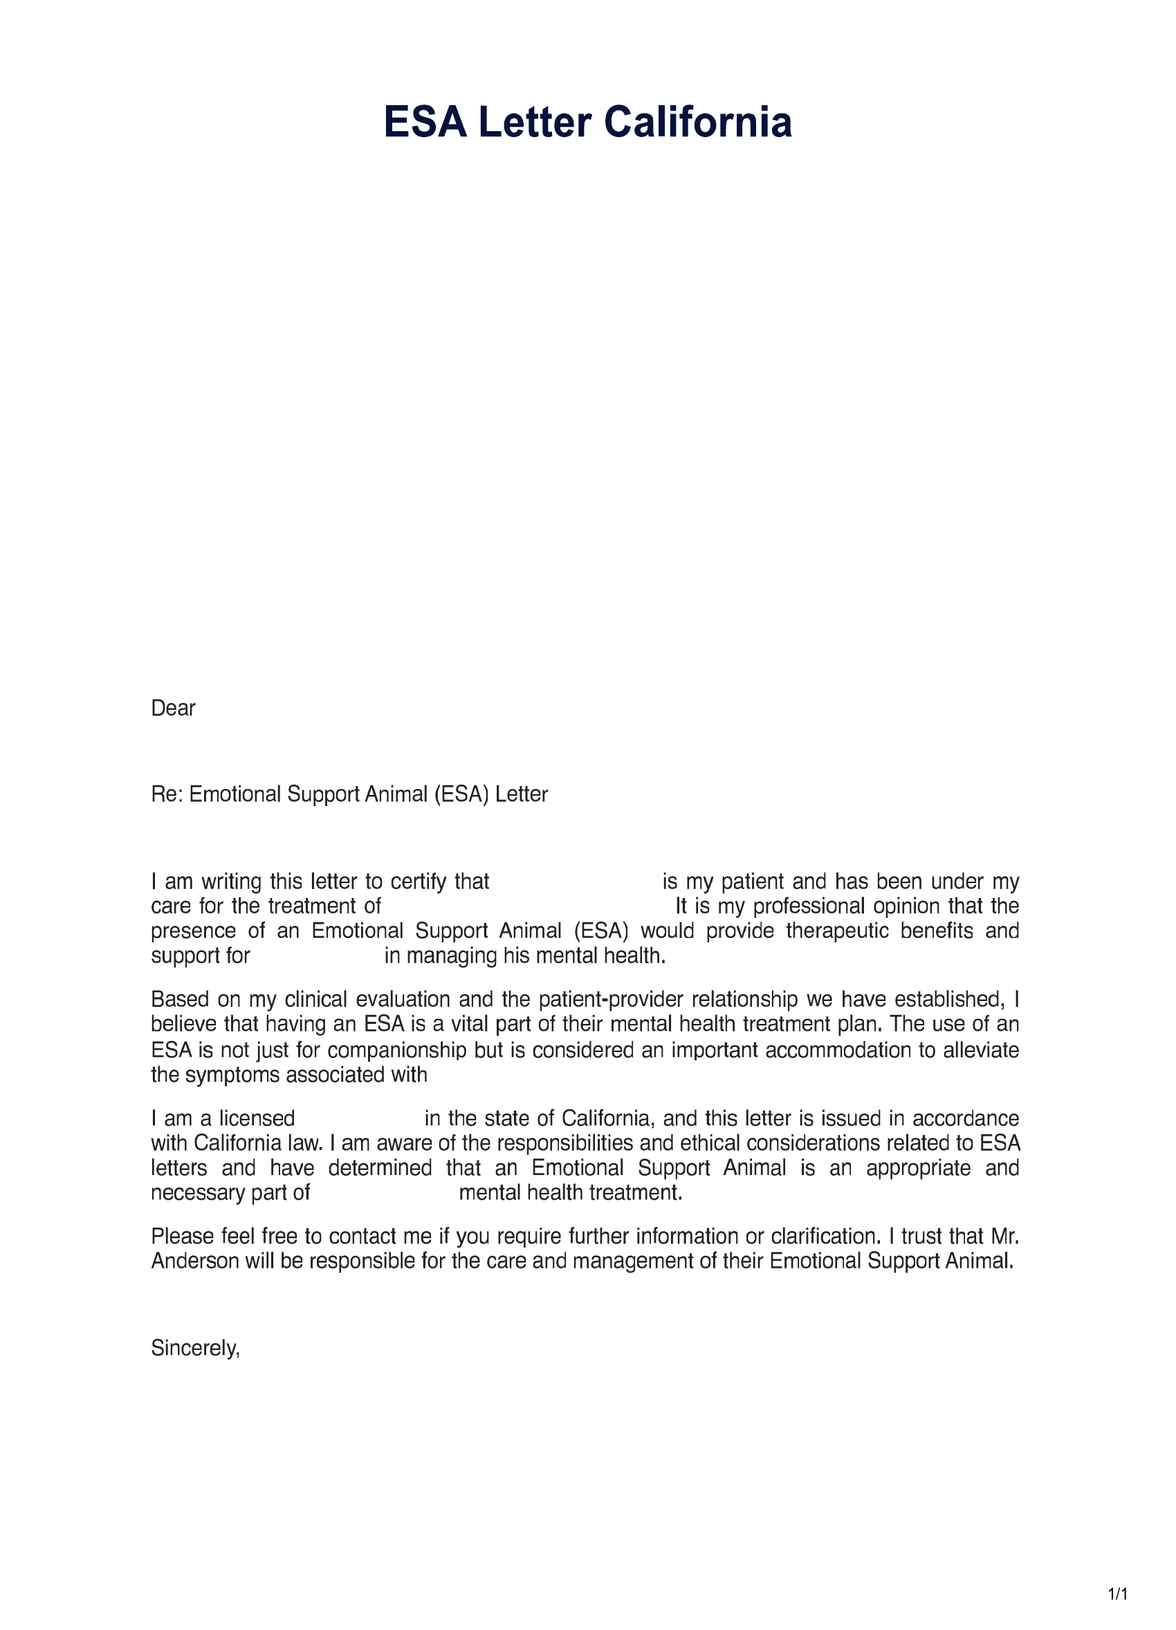 ESA Letter California PDF Example